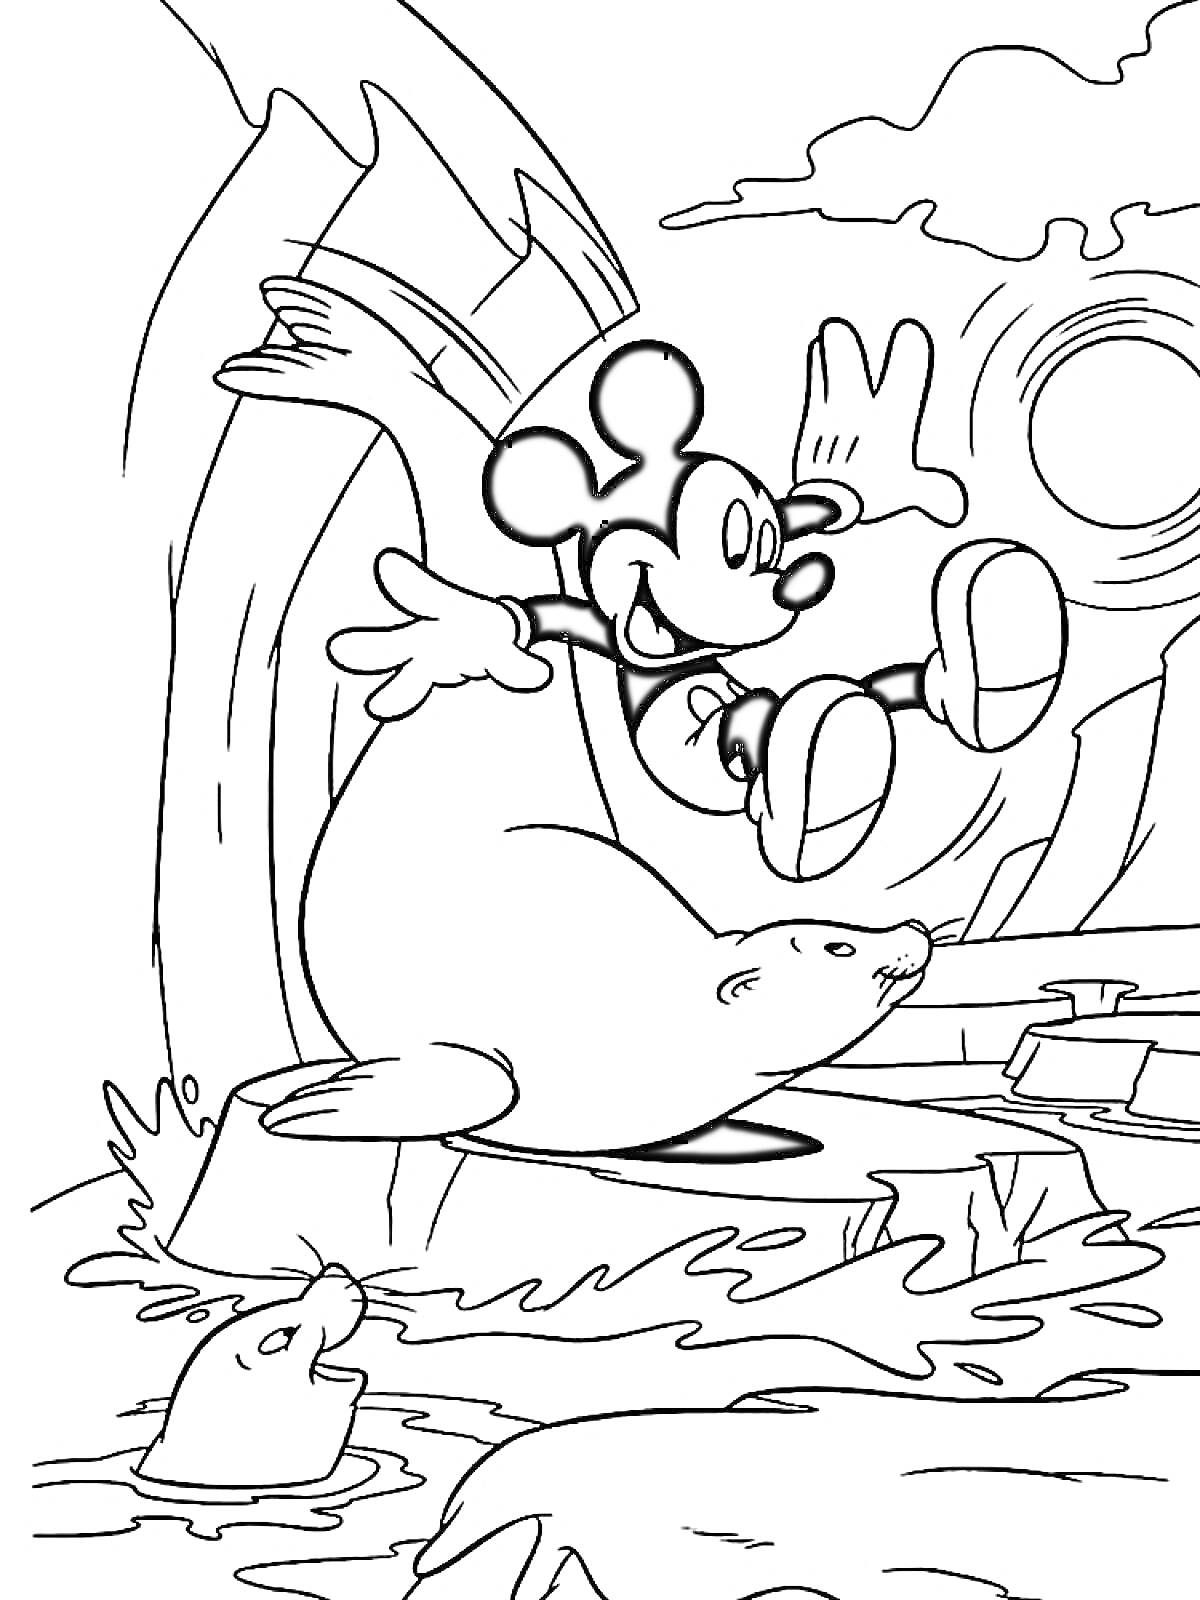 Микки Маус прыгает рядом с тюленем на льдине, сцена у воды, солнечная погода